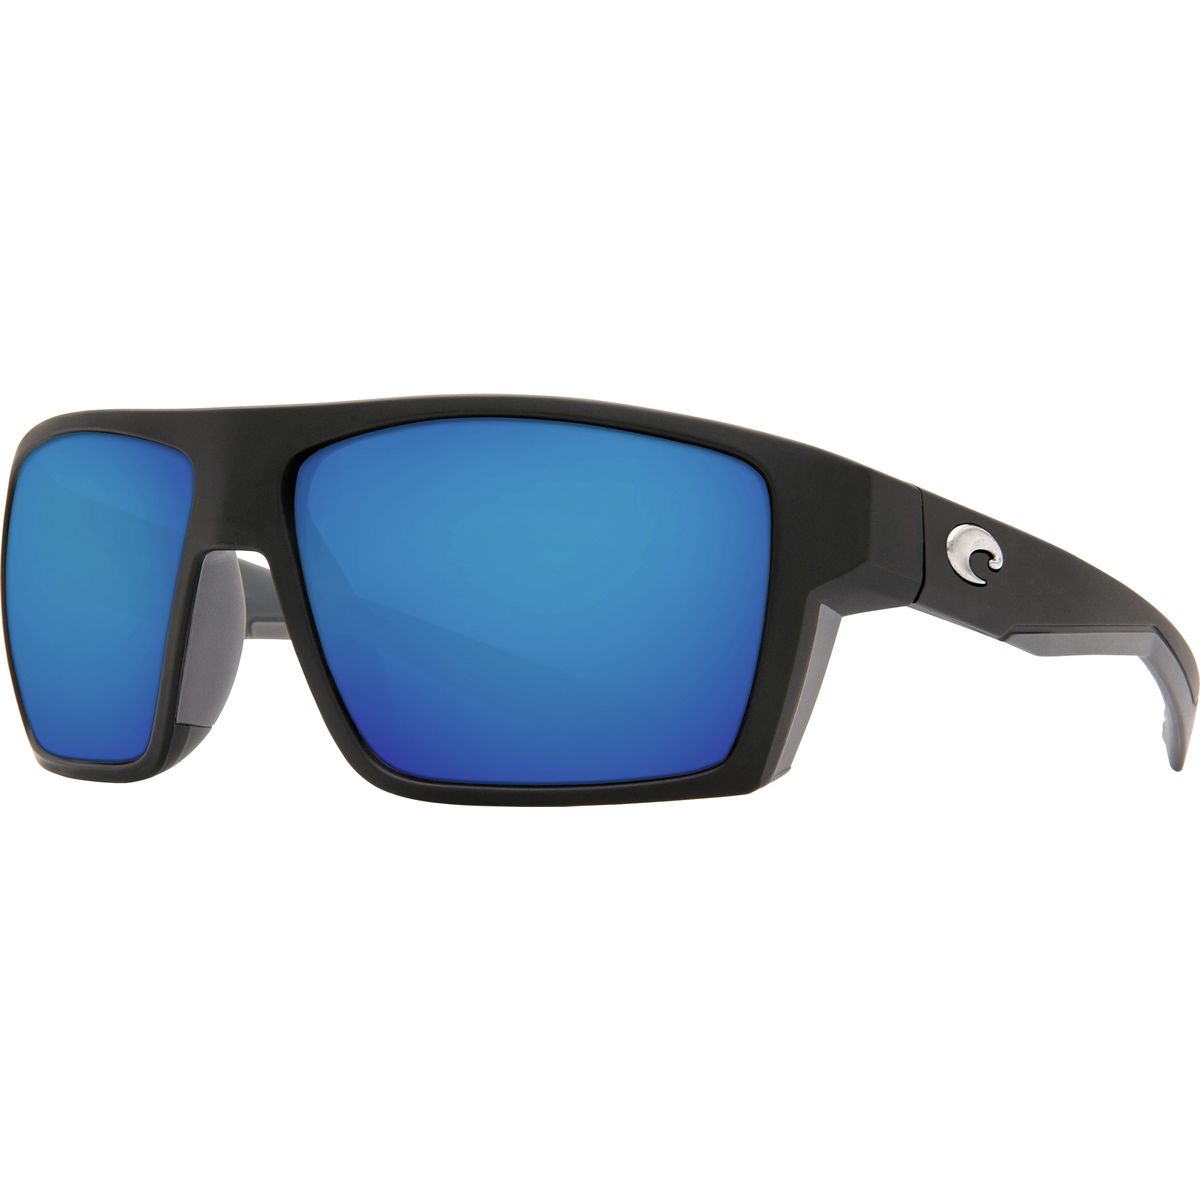 Поляризованные солнцезащитные очки Costa Bloke 580P Costa